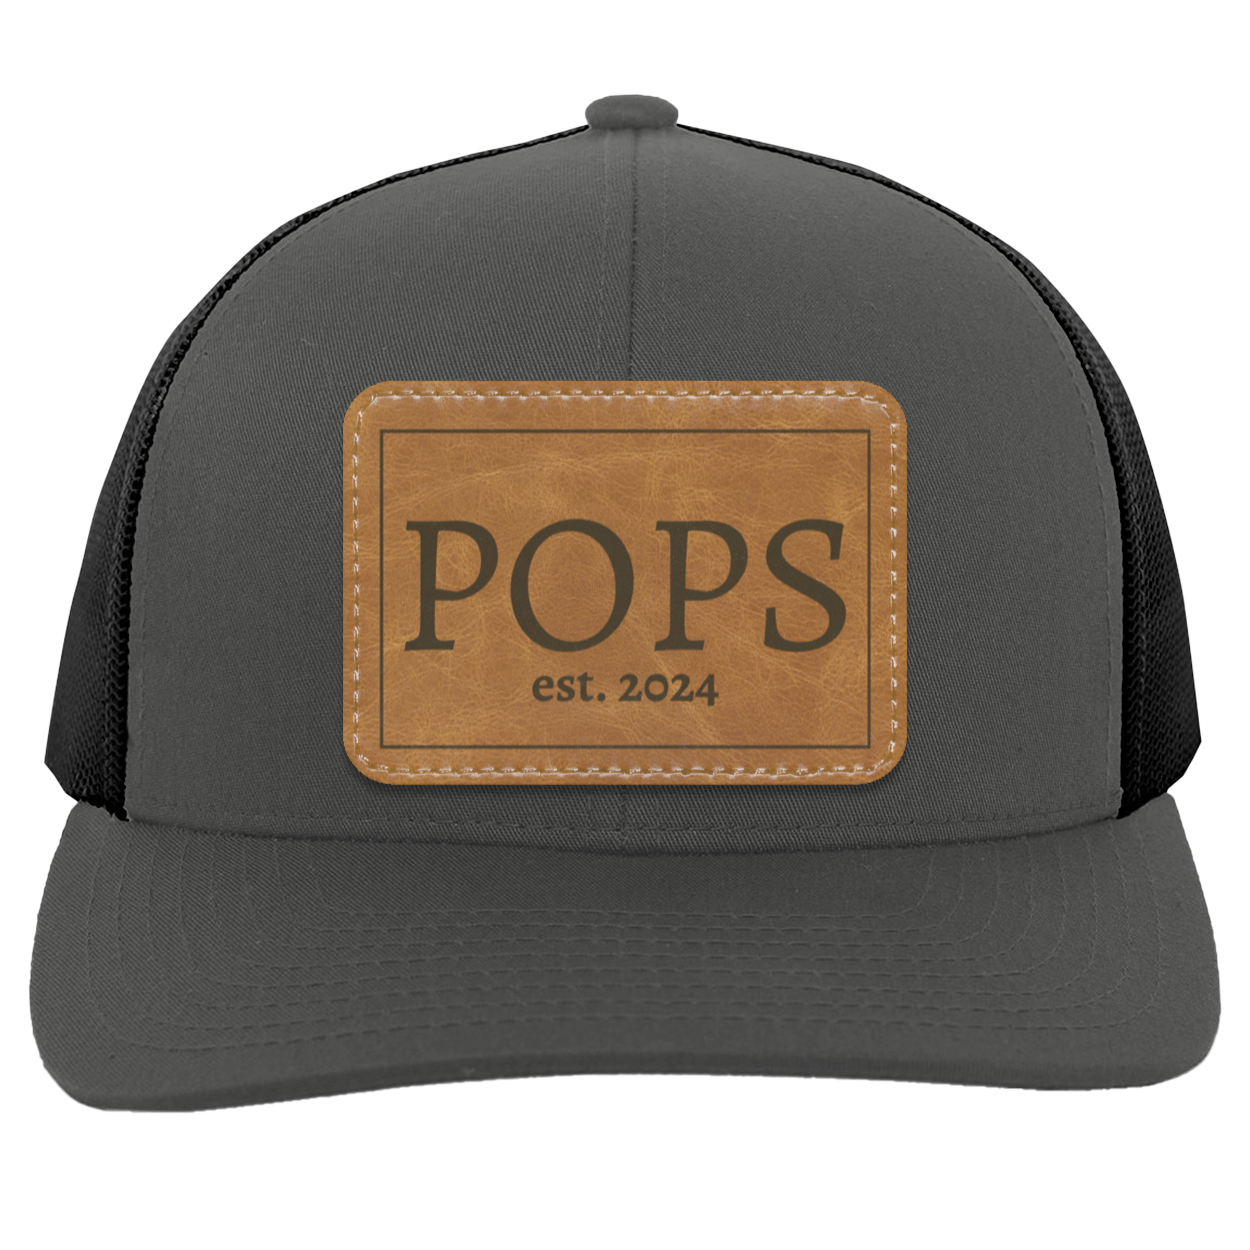 Pops est 2024 | Leather | Trucker Patch Hat